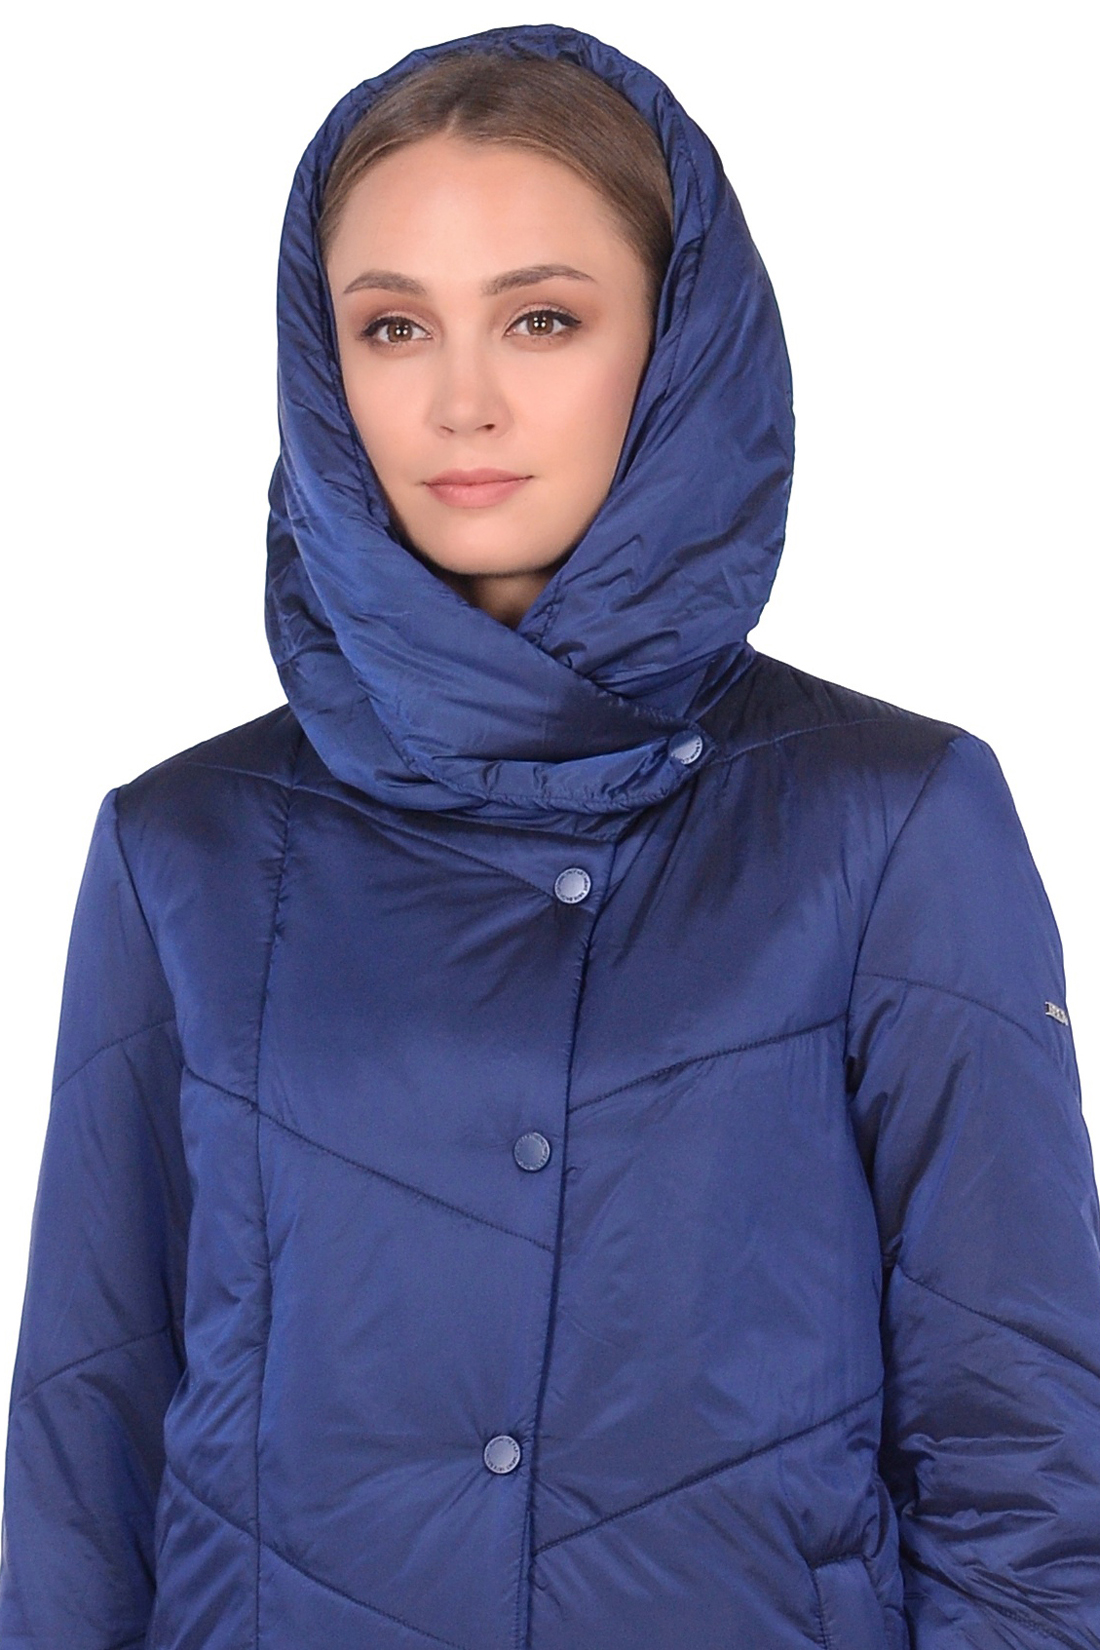 Куртка с капюшоном и асимметричной застёжкой (арт. baon B038524), размер L, цвет синий Куртка с капюшоном и асимметричной застёжкой (арт. baon B038524) - фото 3